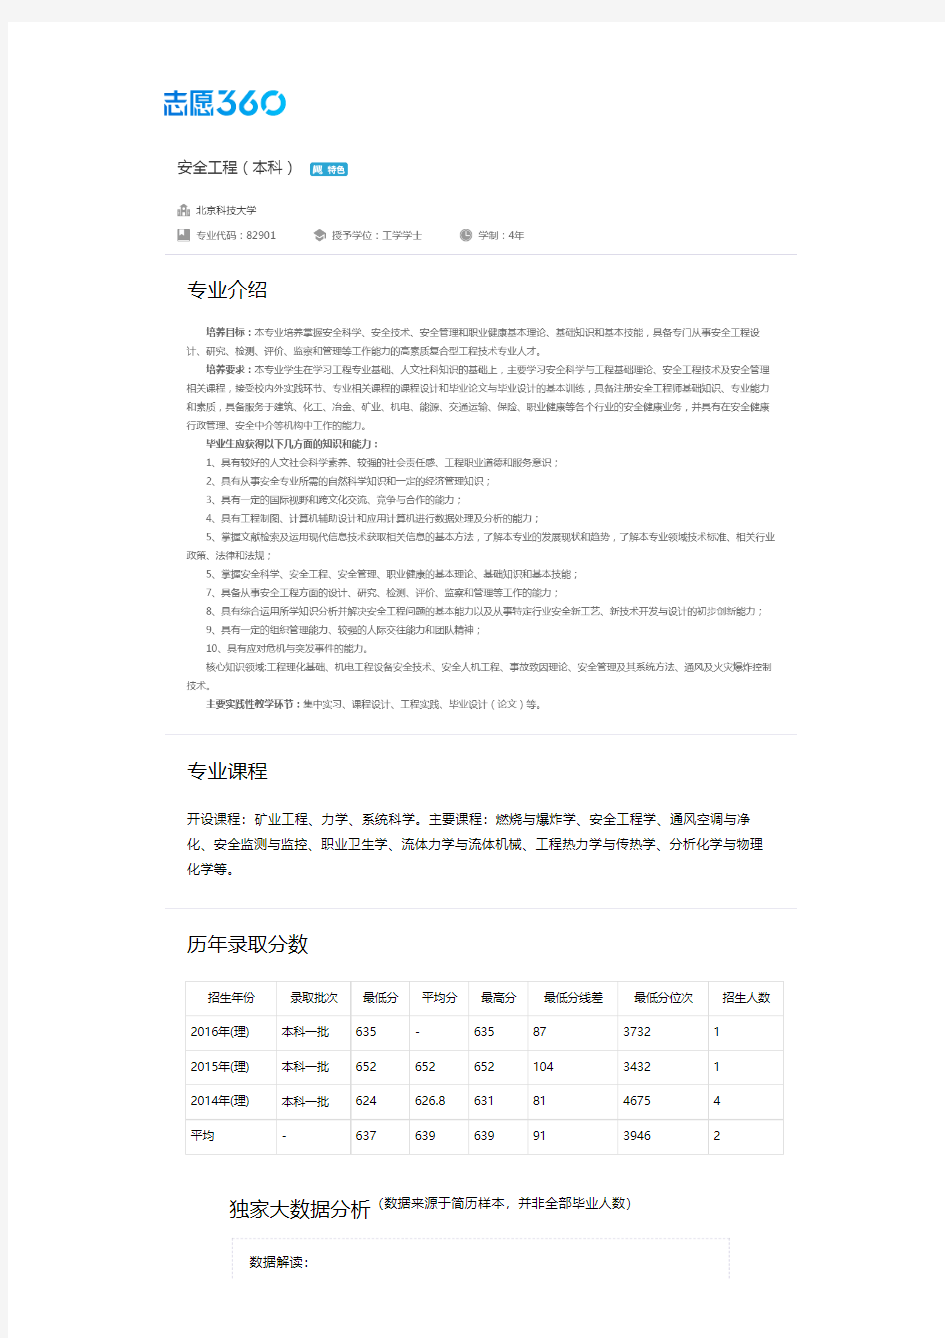 2013-2017年北京科技大学安全工程专业毕业生就业大数据报告